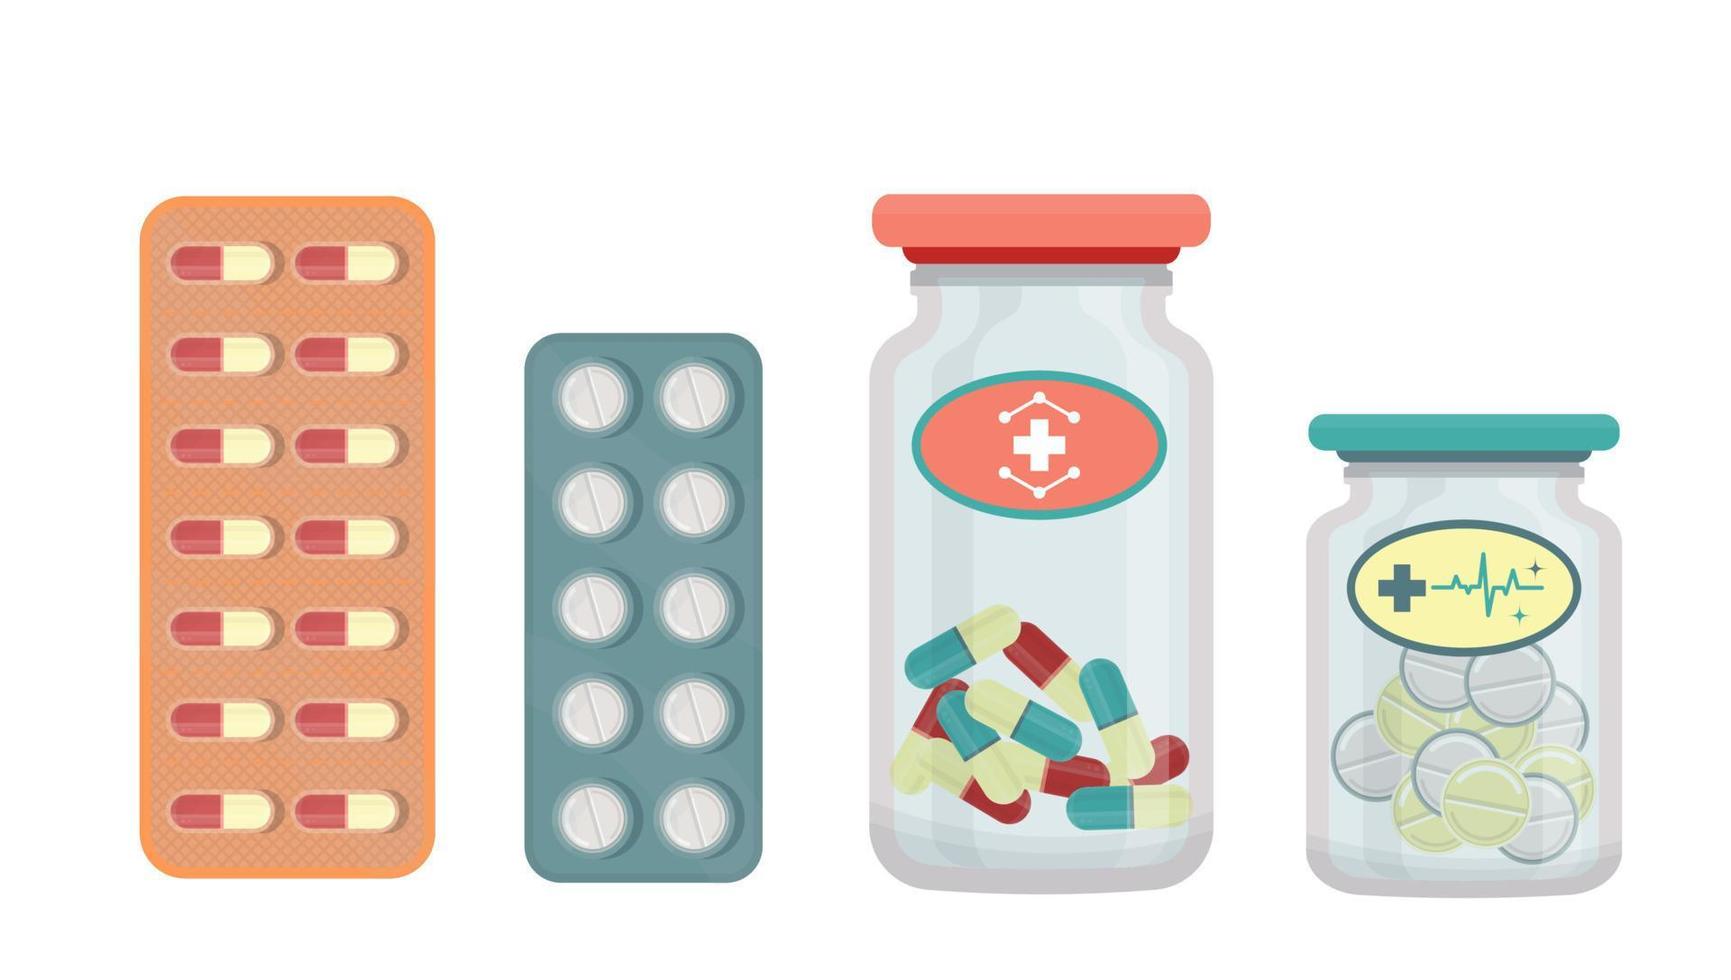 reeks van tabletten, pillen geïsoleerd. fles met pillen, drugs. vlak vector illustratie.